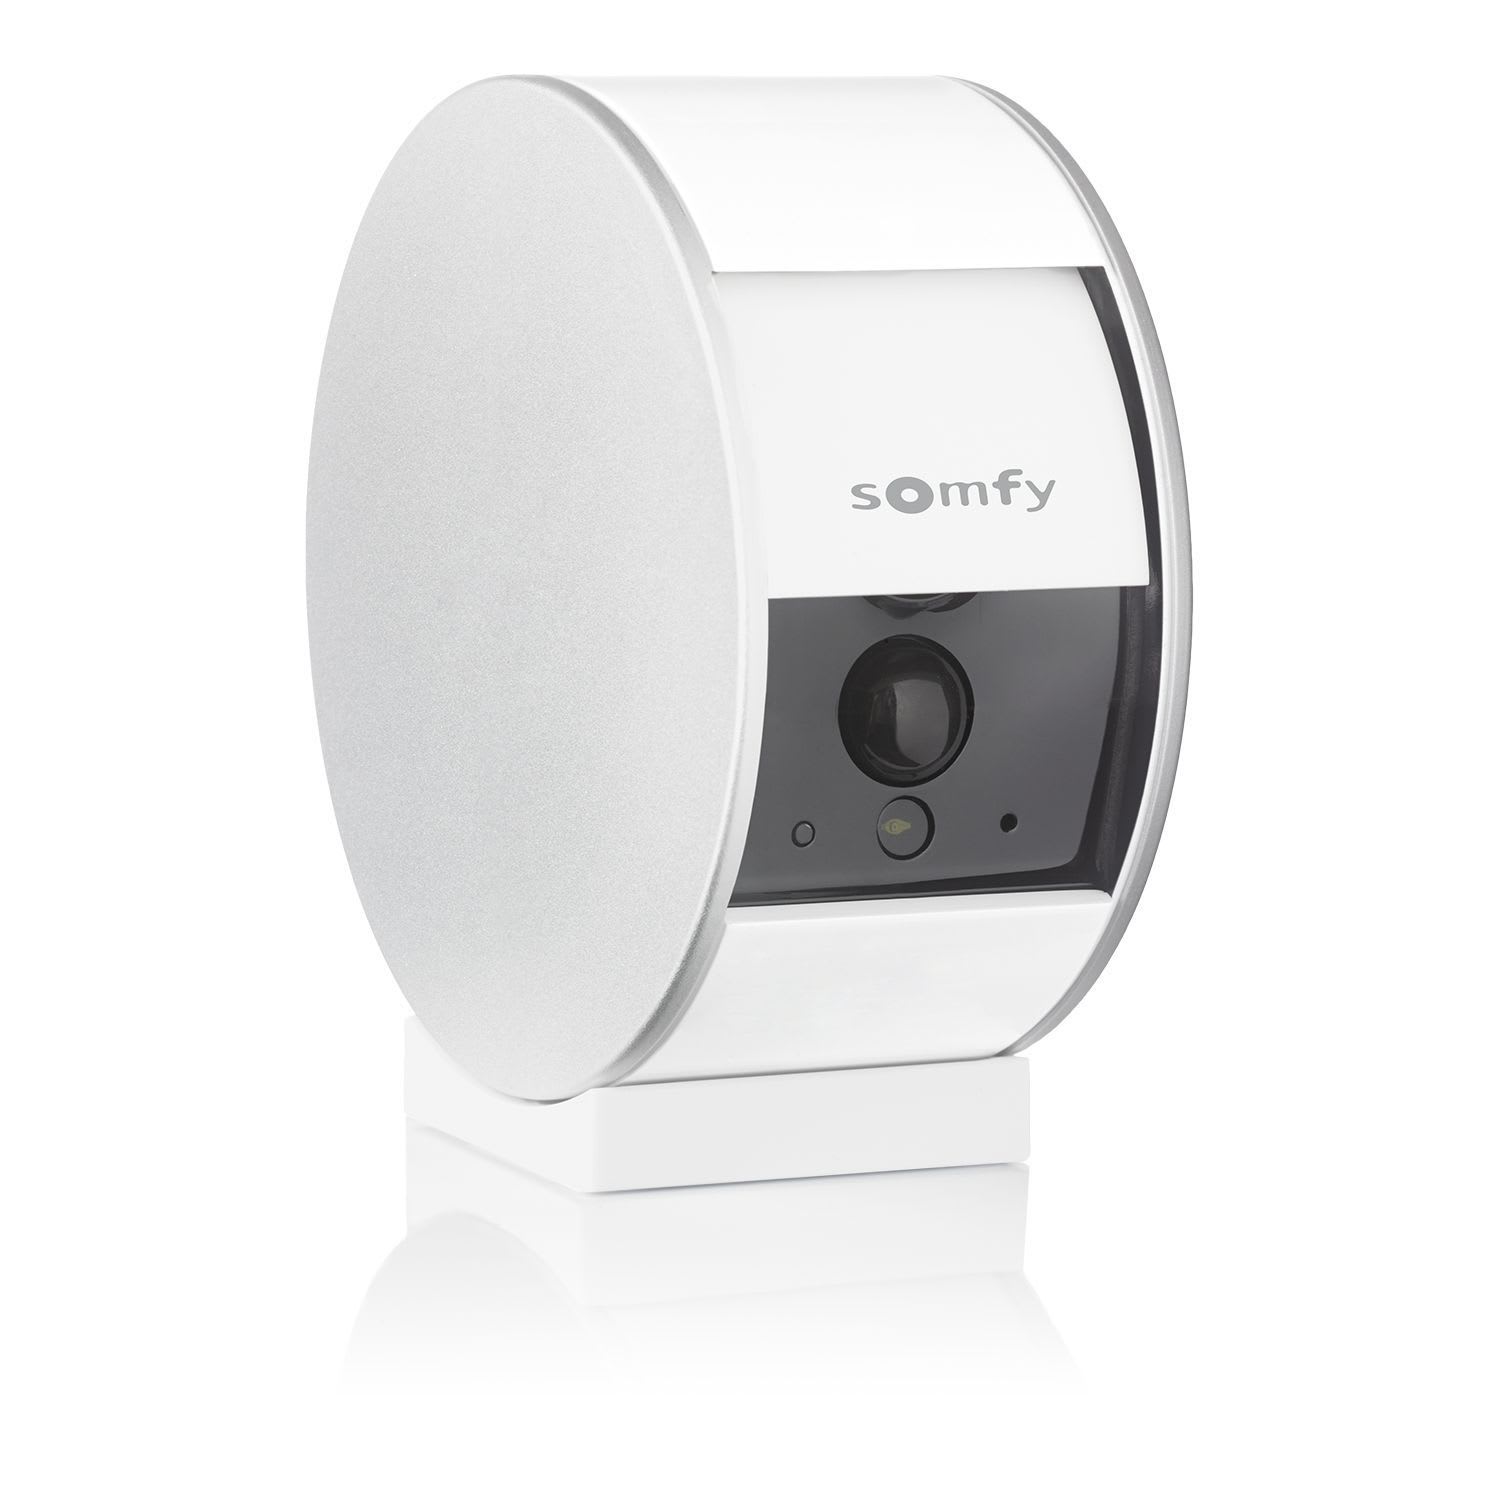 Somfy - Somfy Indoor Camera équipée d?un volet motorisé pour protéger la vie privée